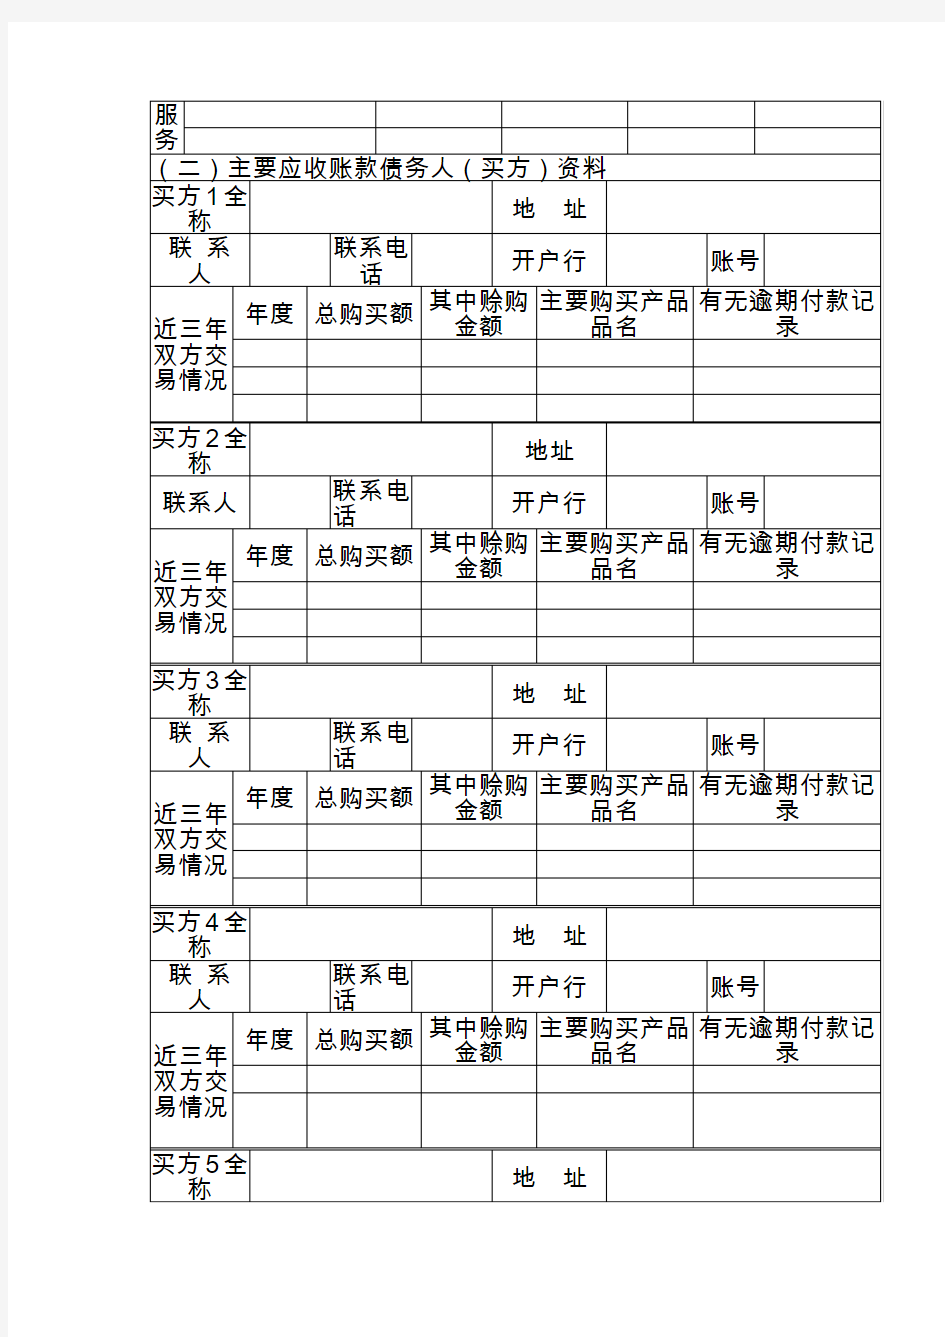 广州兴泰商业保理公司国内保理业务申请书(客户信息表)